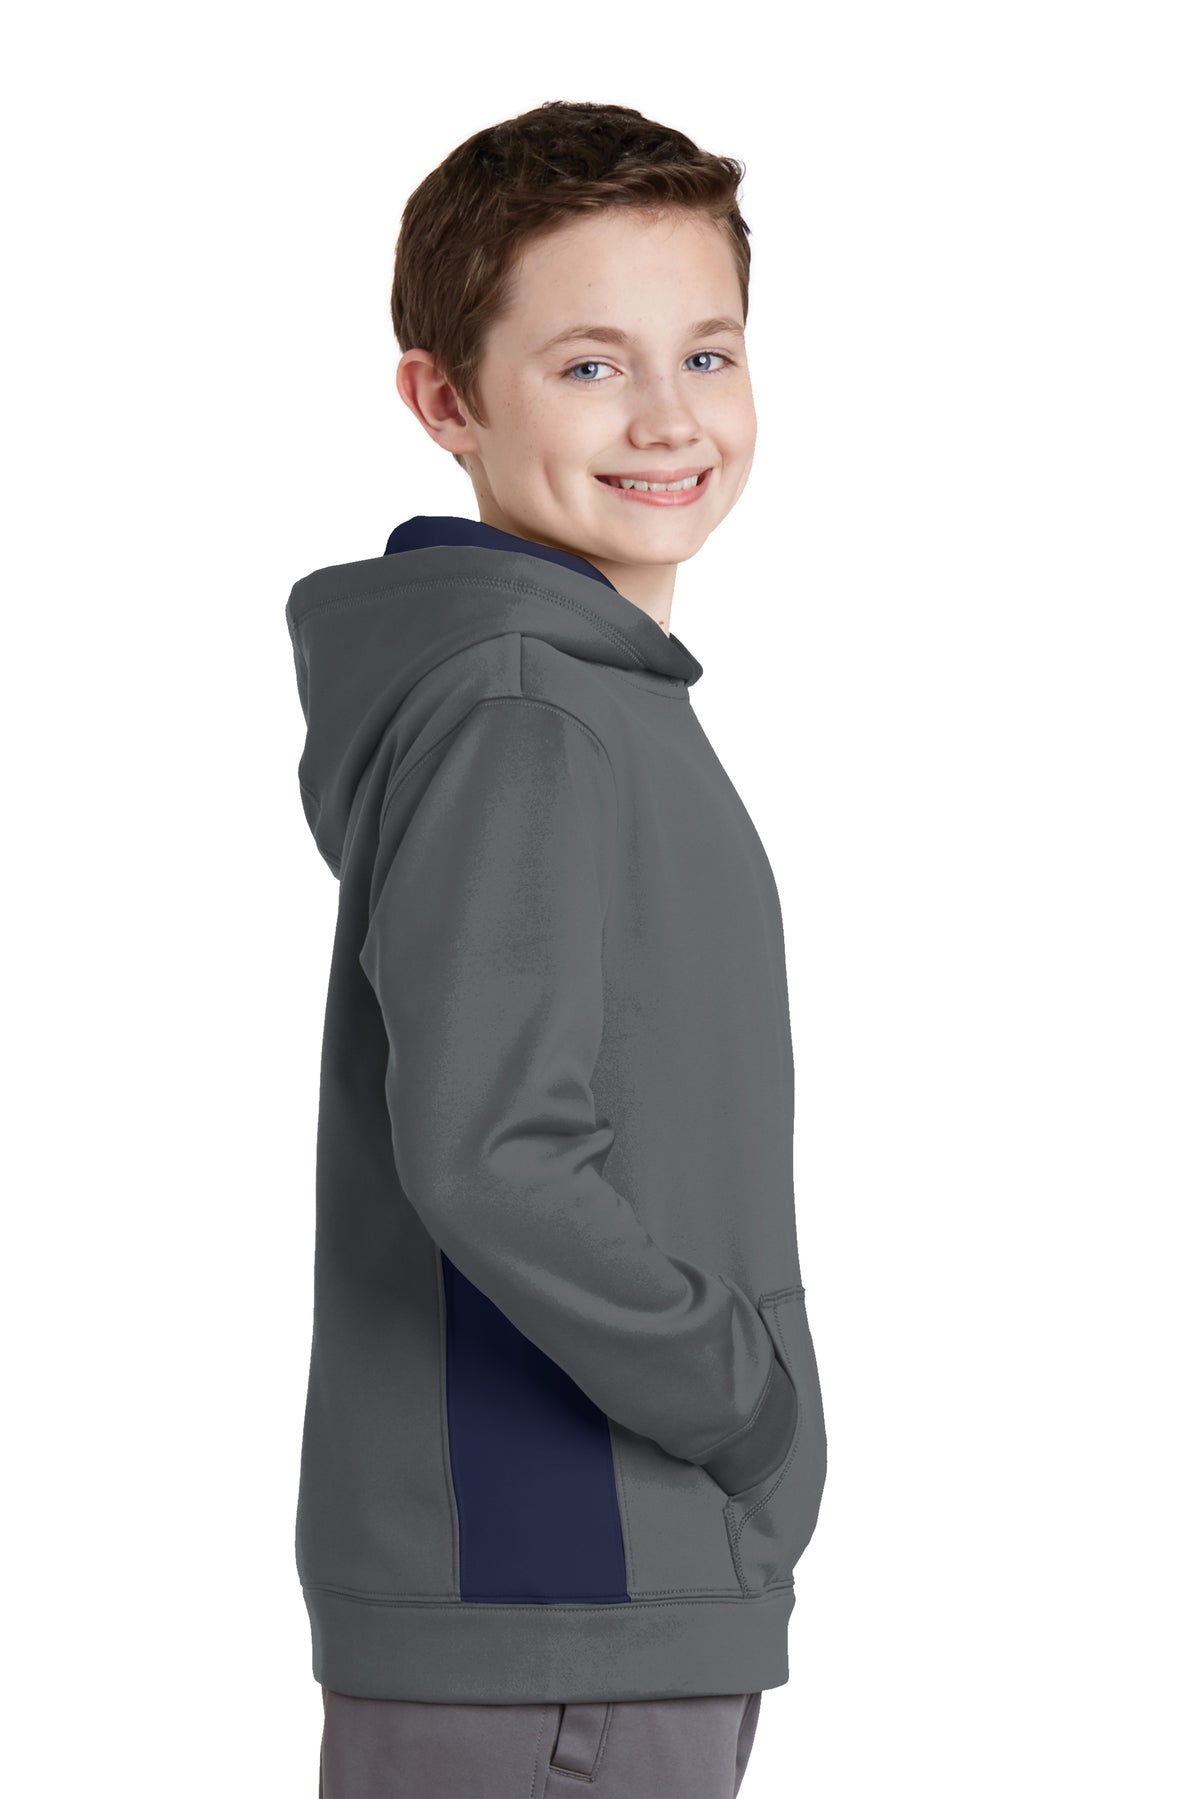 YST235 Sport-Tek® Youth Sport-Wick® Fleece Colorblock Hooded Pullover